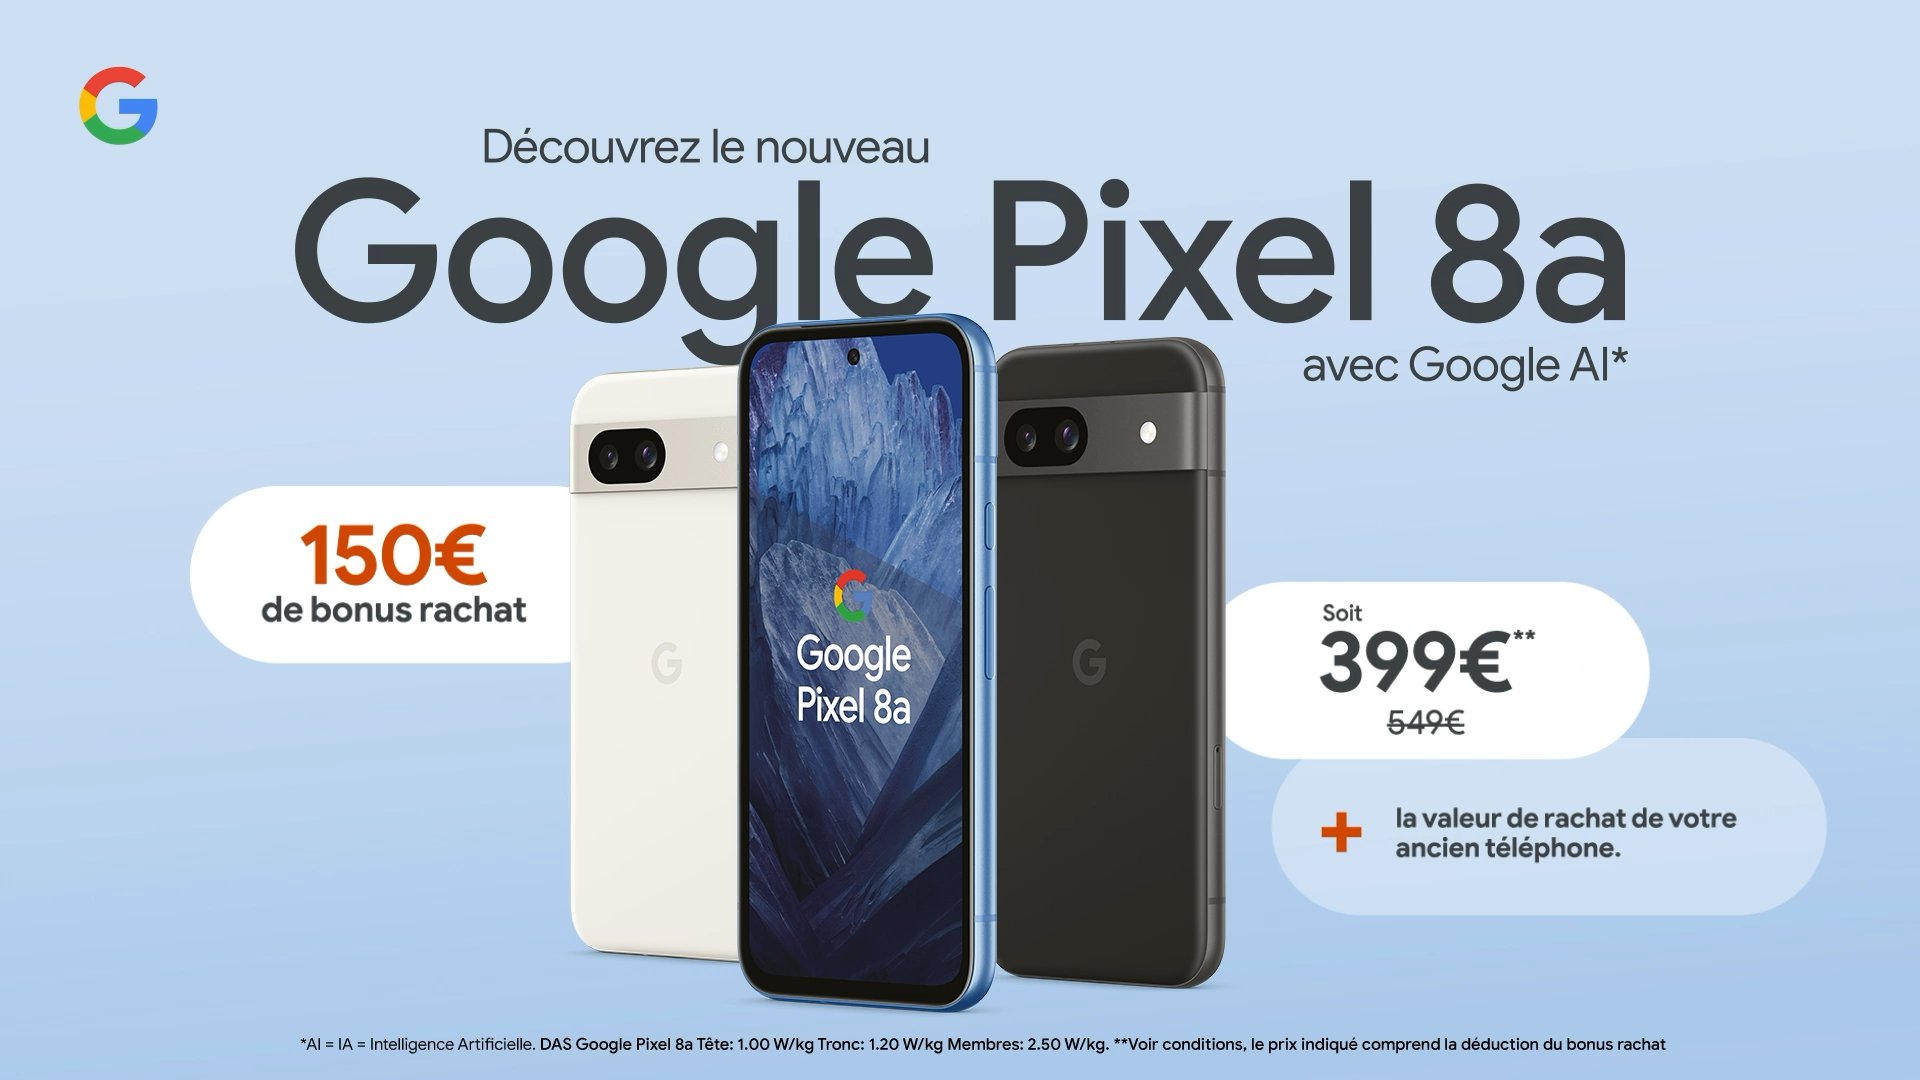 Google Pixel 8a の欧州価格がリークされました